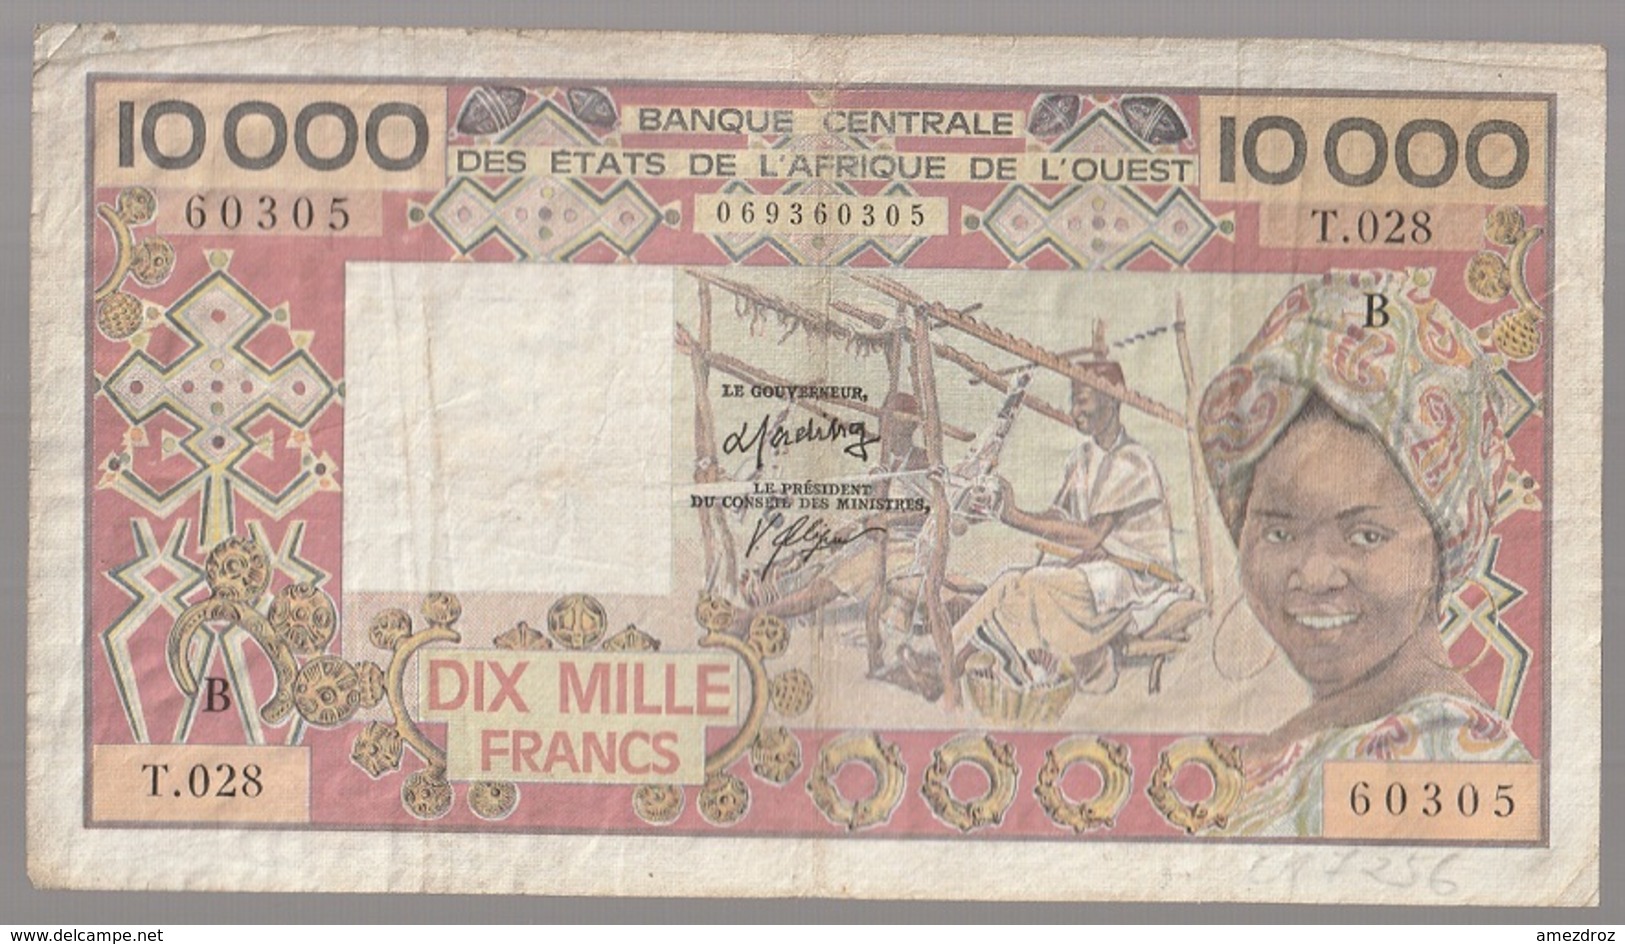 Côte D'Ivoire Billet De 10 000 Francs CFA Série B Circulé - Elfenbeinküste (Côte D'Ivoire)